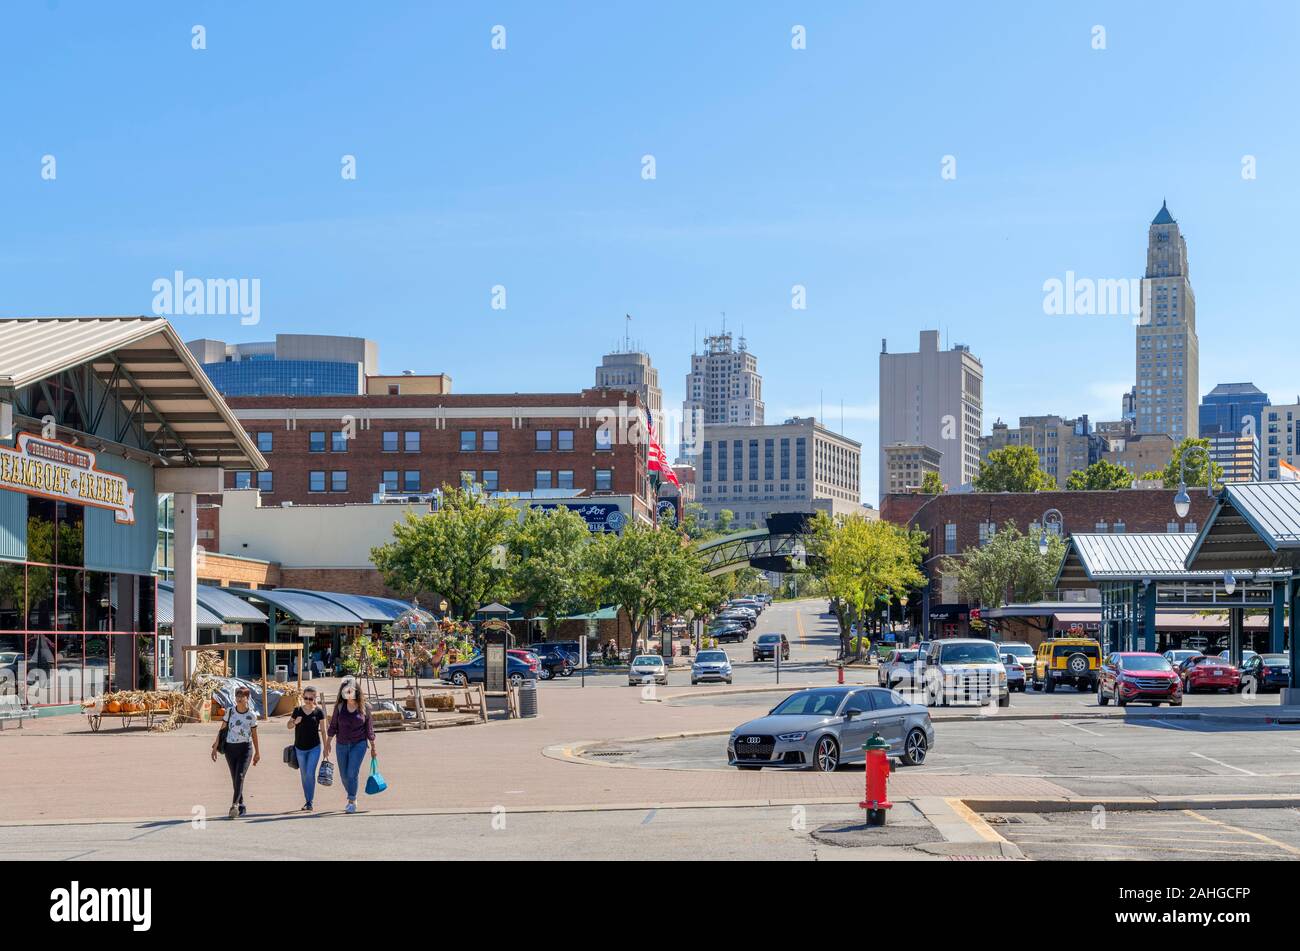 El horizonte del centro de la histórica ciudad de mercado, distrito del mercado fluvial, Kansas City, Missouri, EE.UU. Foto de stock